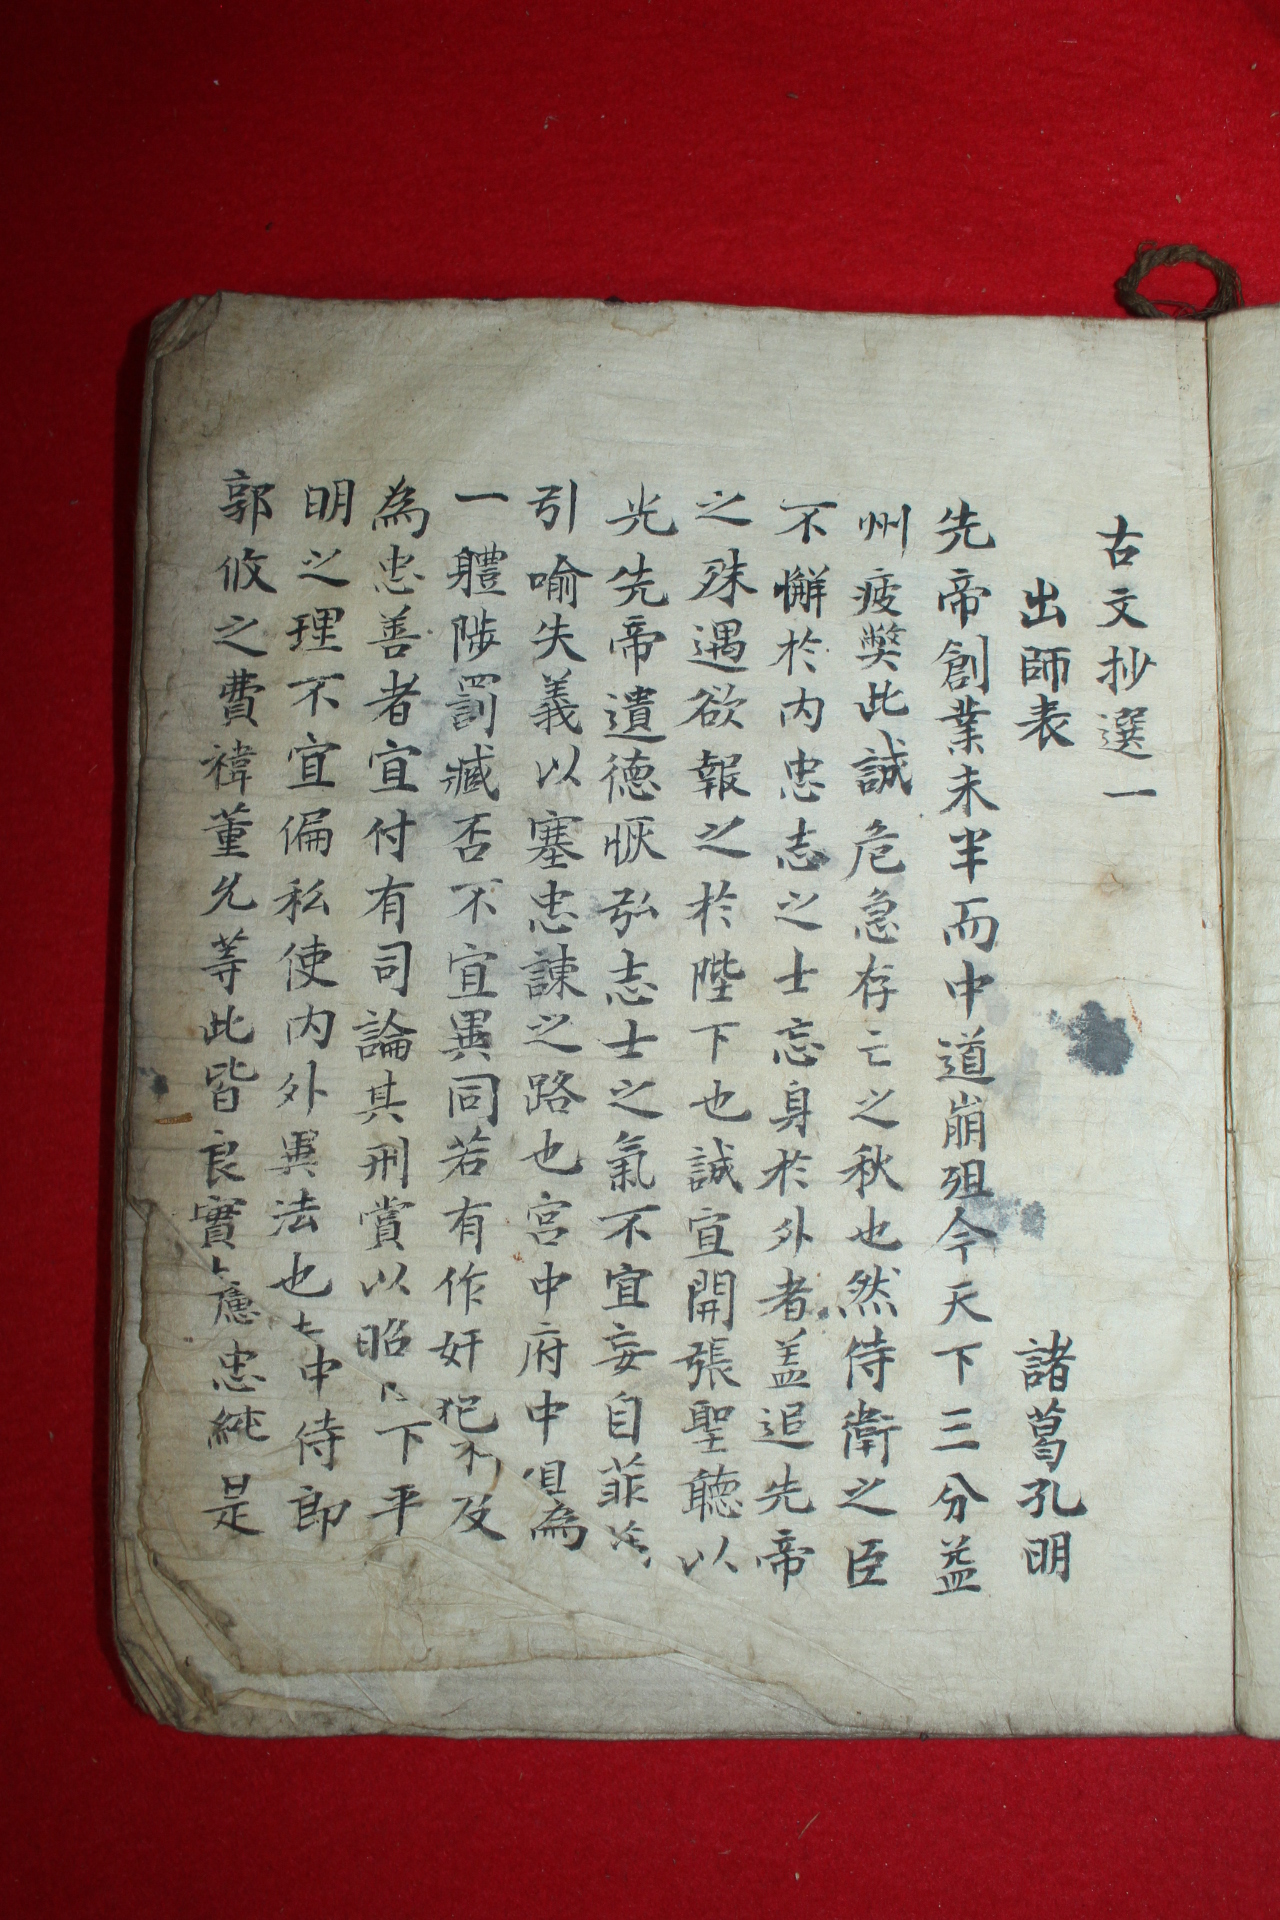 조선시대 필사본 제갈공명 출사표 고문초선(古文抄選)